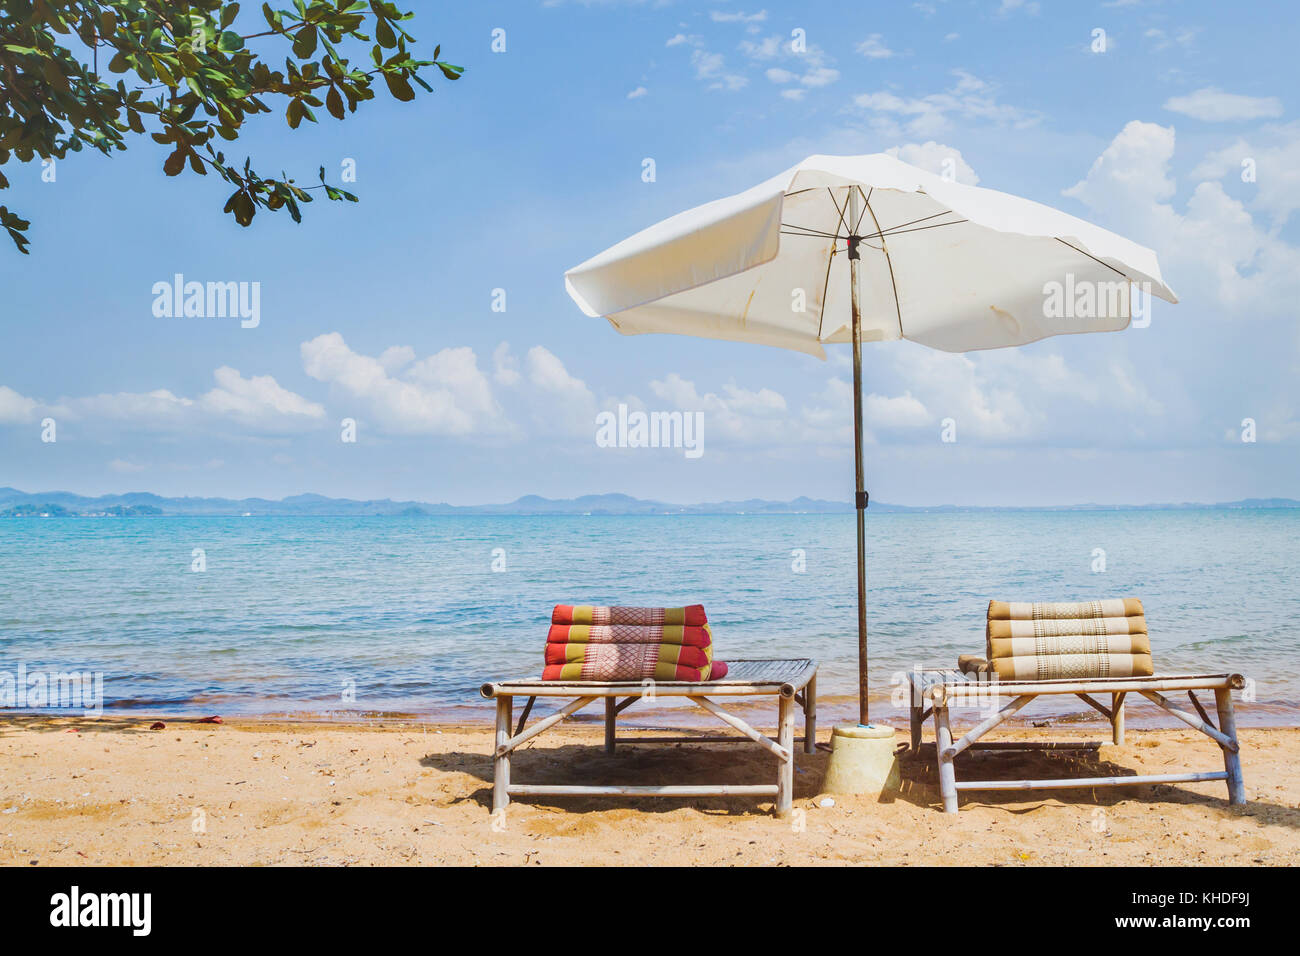 Le tourisme de plage, deux chaises longues et parasol près de la mer Banque D'Images